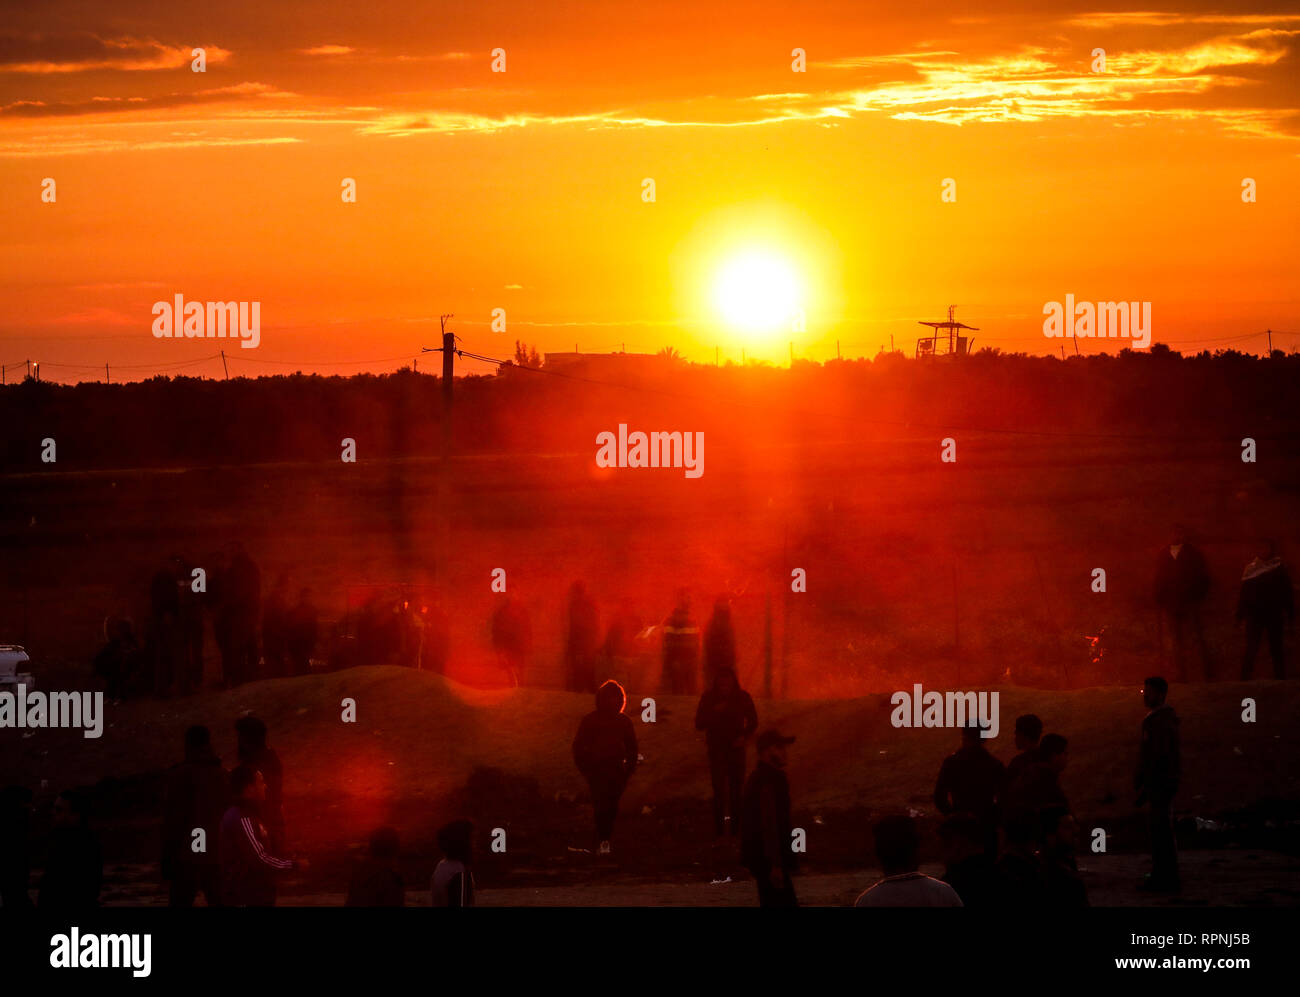 Palestiniens vu sous le coucher du soleil au cours d'affrontements à la suite de la "grande marche du retour" de Shuja'iyya de démonstration, dans la ville de Gaza, Gaza. Banque D'Images